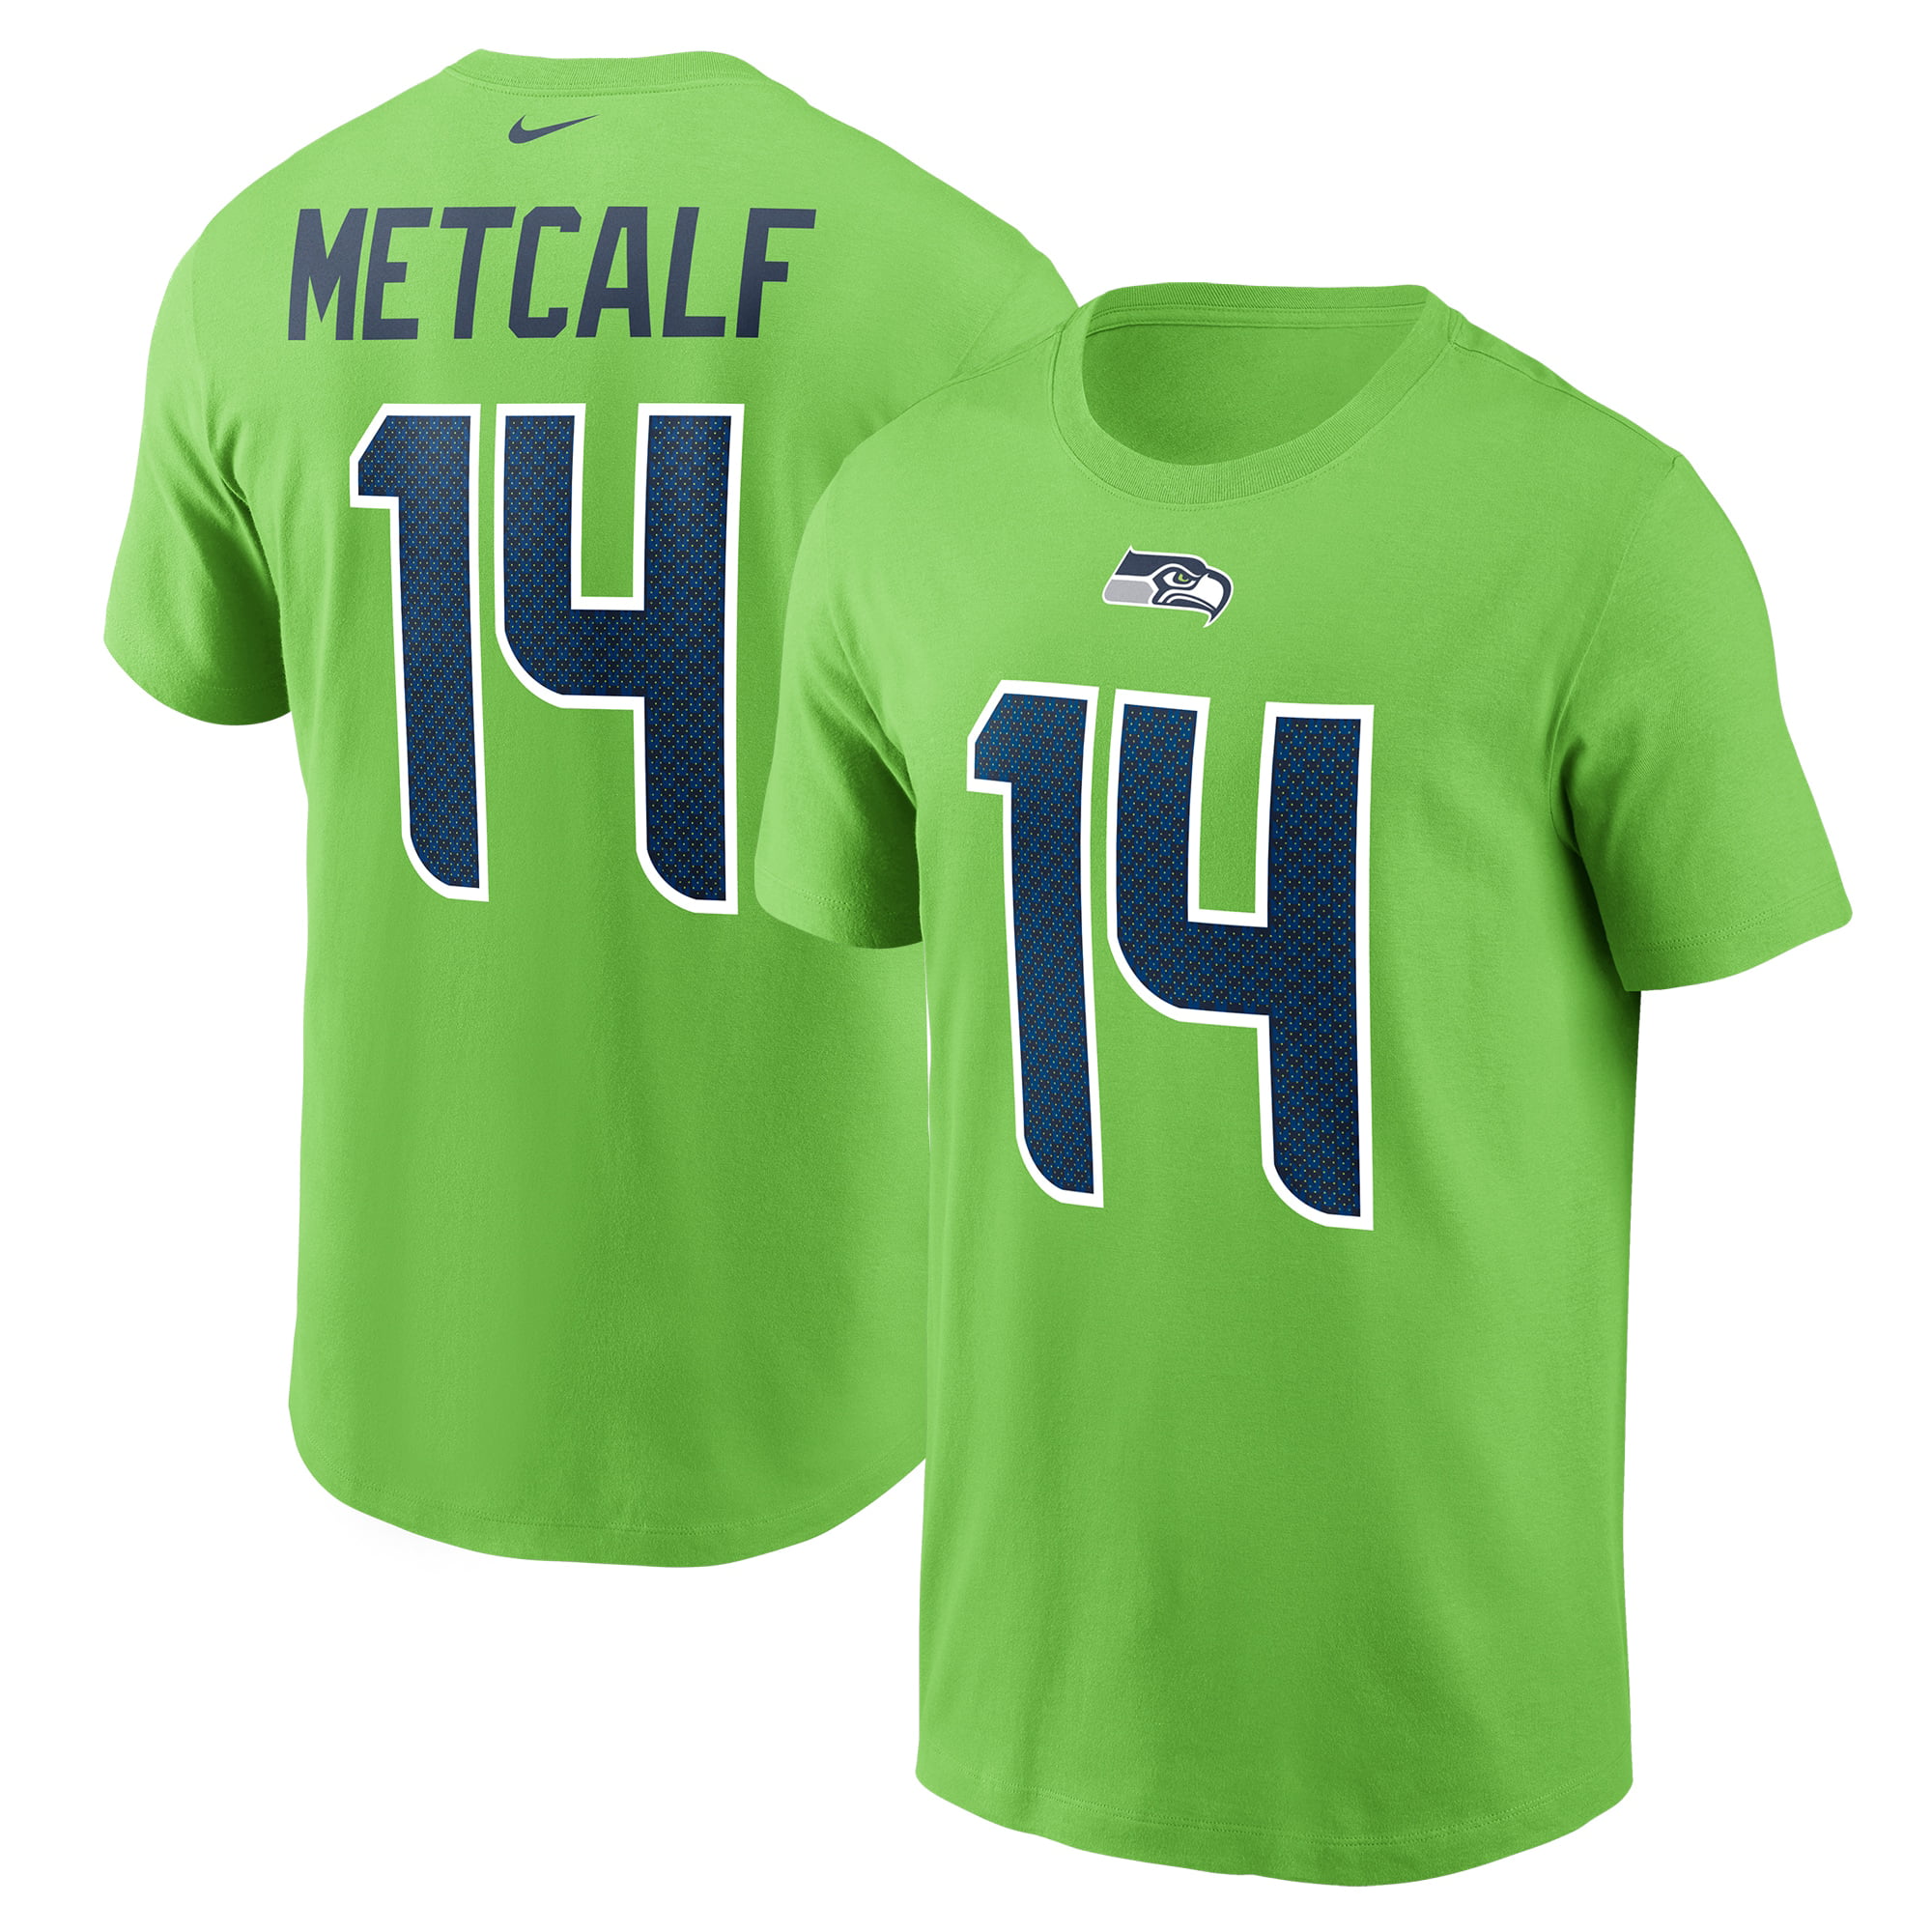 DK Metcalf Seattle Seahawks Nike Men's NFL Jersey 3XL